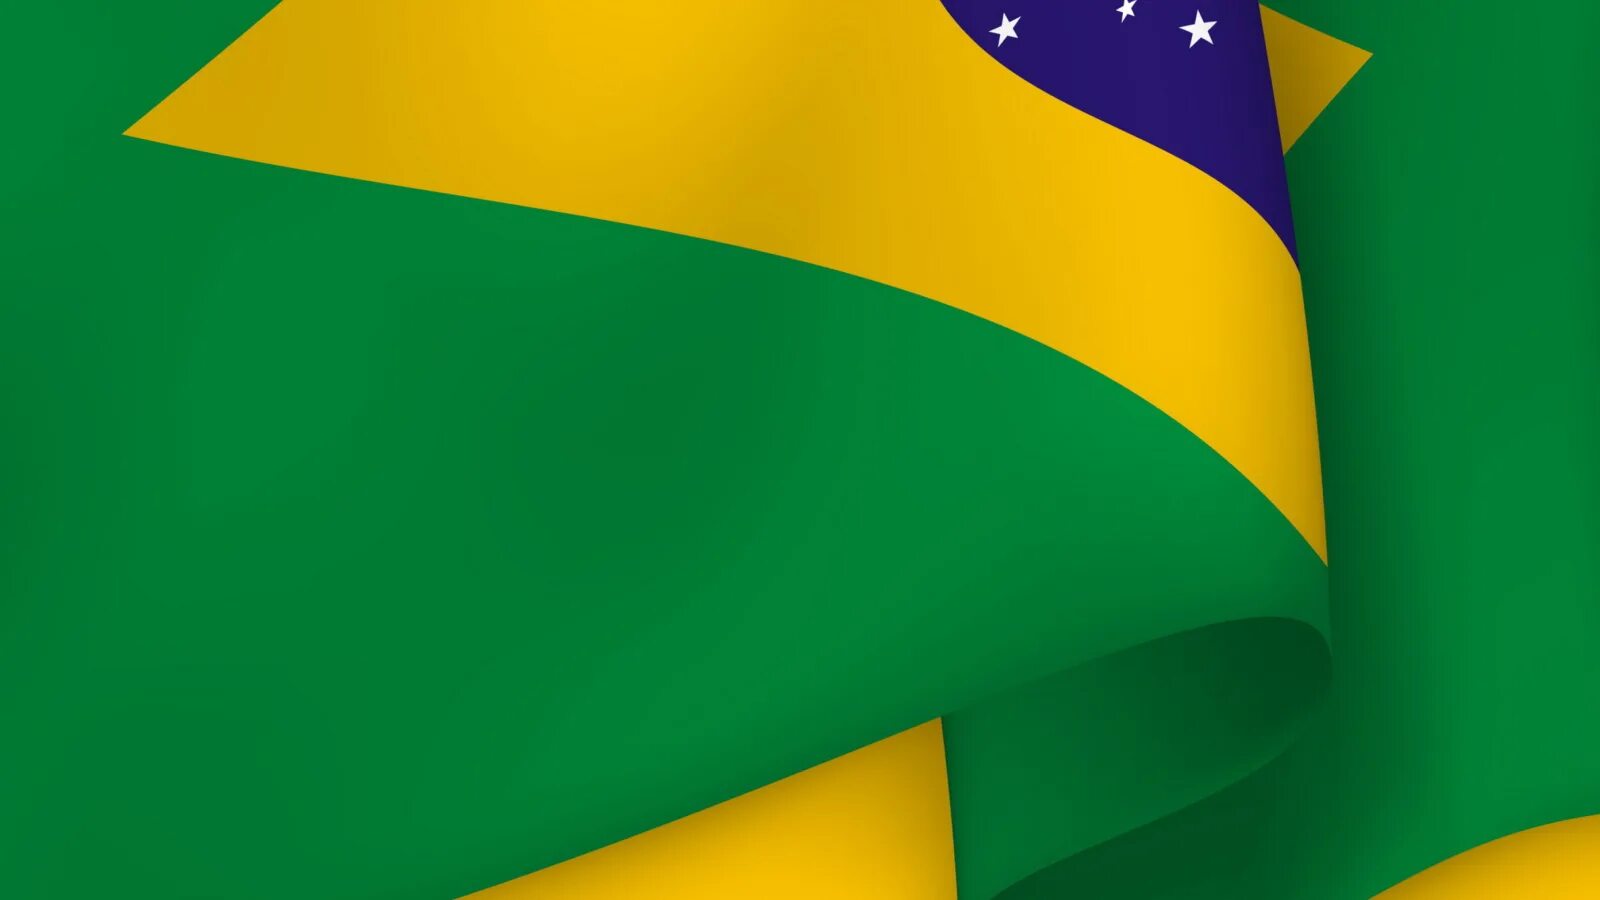 Флаг Бразилии. Бразилия фон для презентации. Флаг на зеленом фоне. Флаг Бразилии фон. Флаг зеленый желтый зеленый вертикально